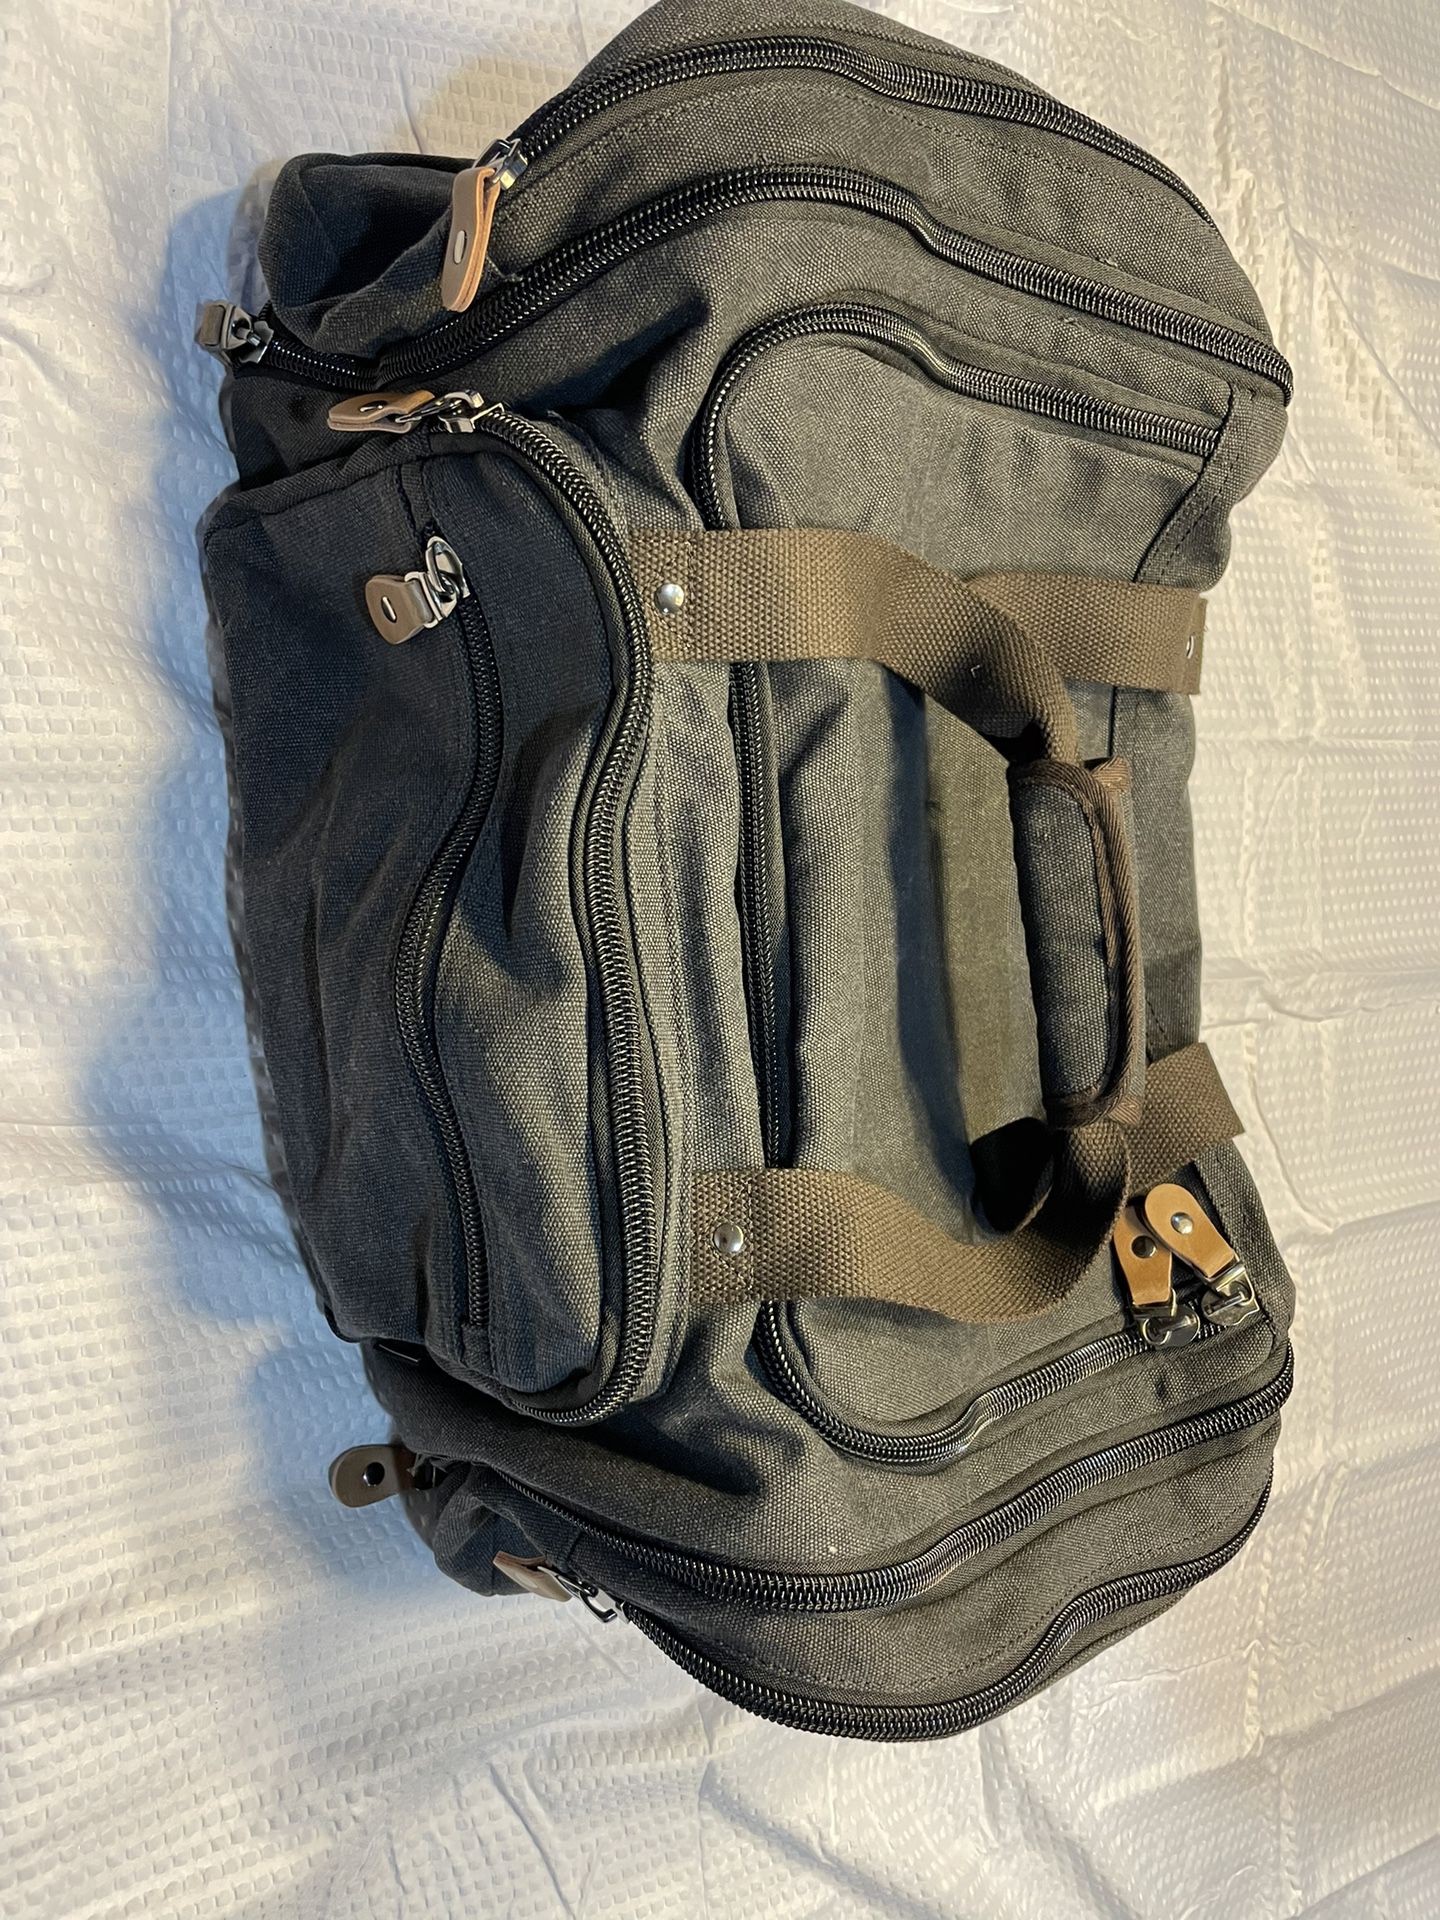 New Dark Grey Heavy Duty Travel Duffle Bag By Gonex  Local P/U